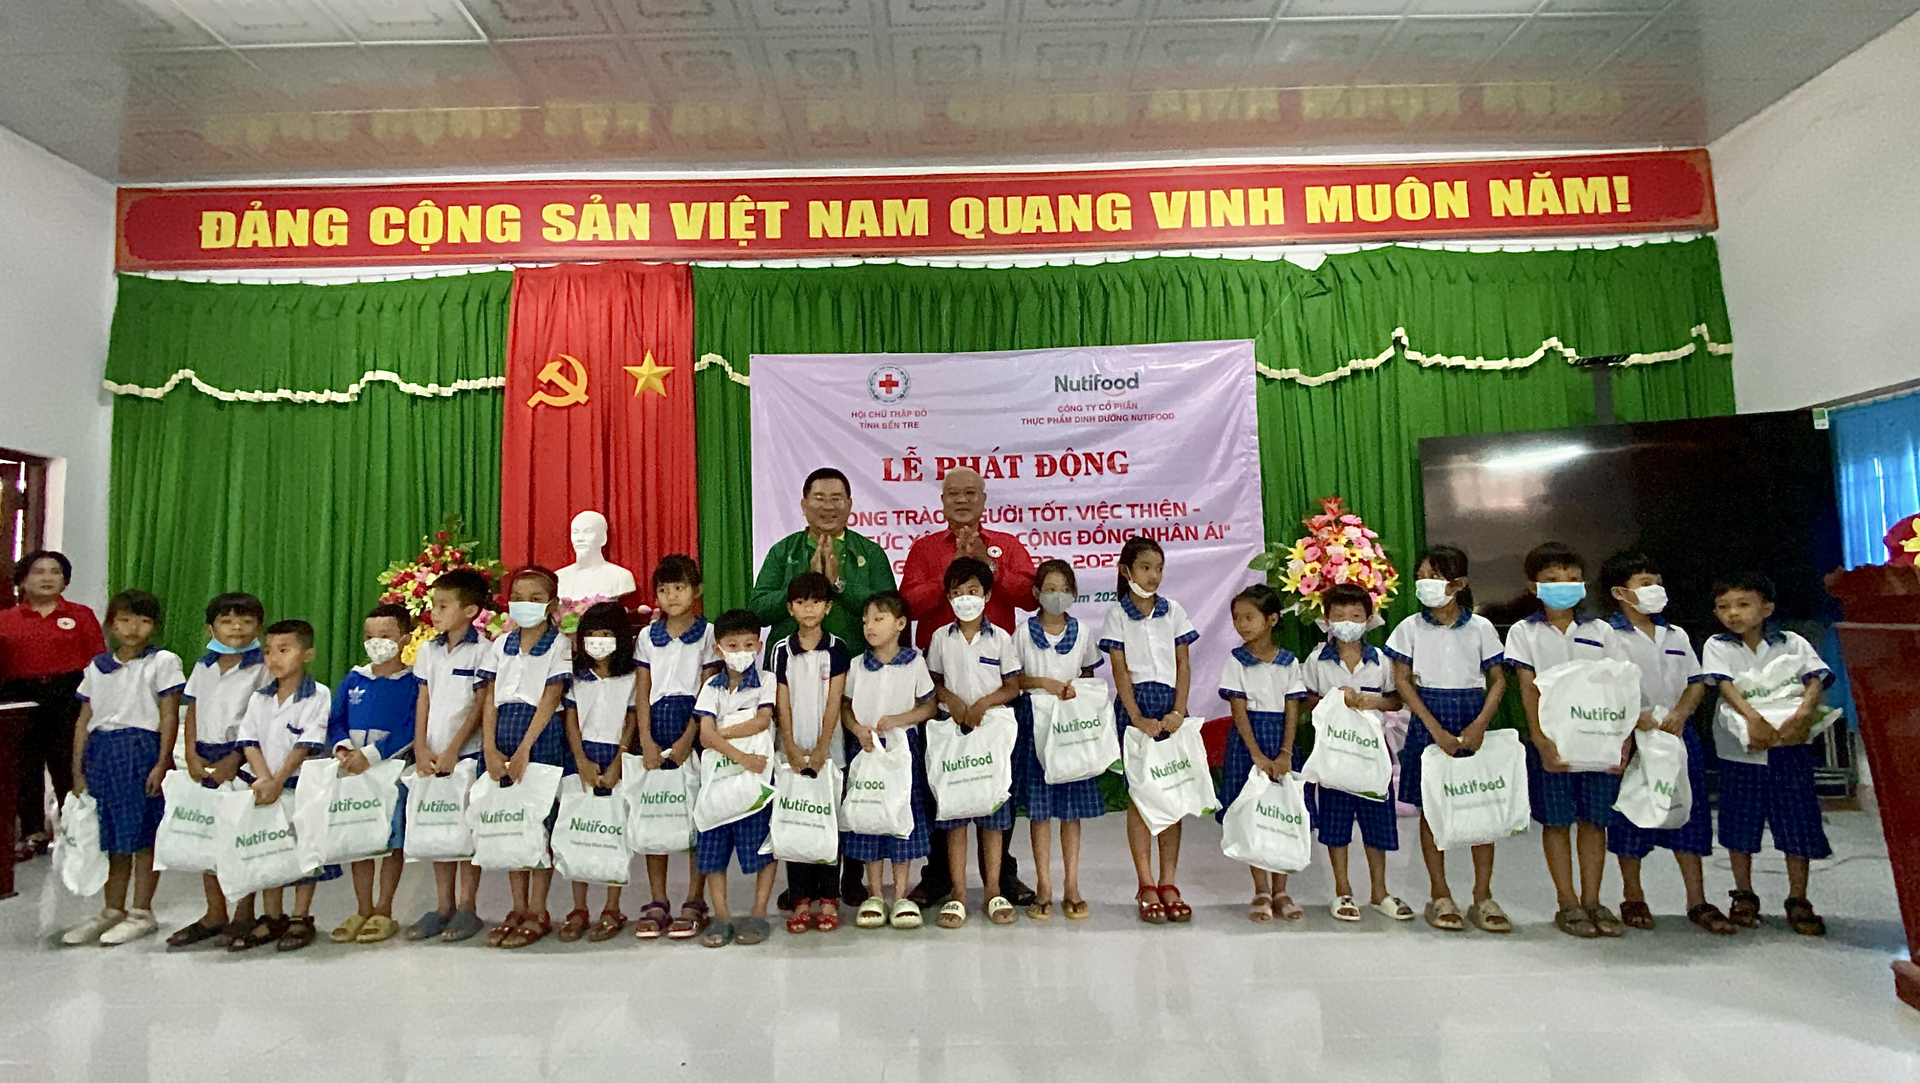 Nutifood trao sữa cho các học sinh tại trường Tiểu học Nguyễn Thị Lang, huyện Bình Đại, tỉnh Bến Tre ngày 26/5. Ảnh: Nutifood.